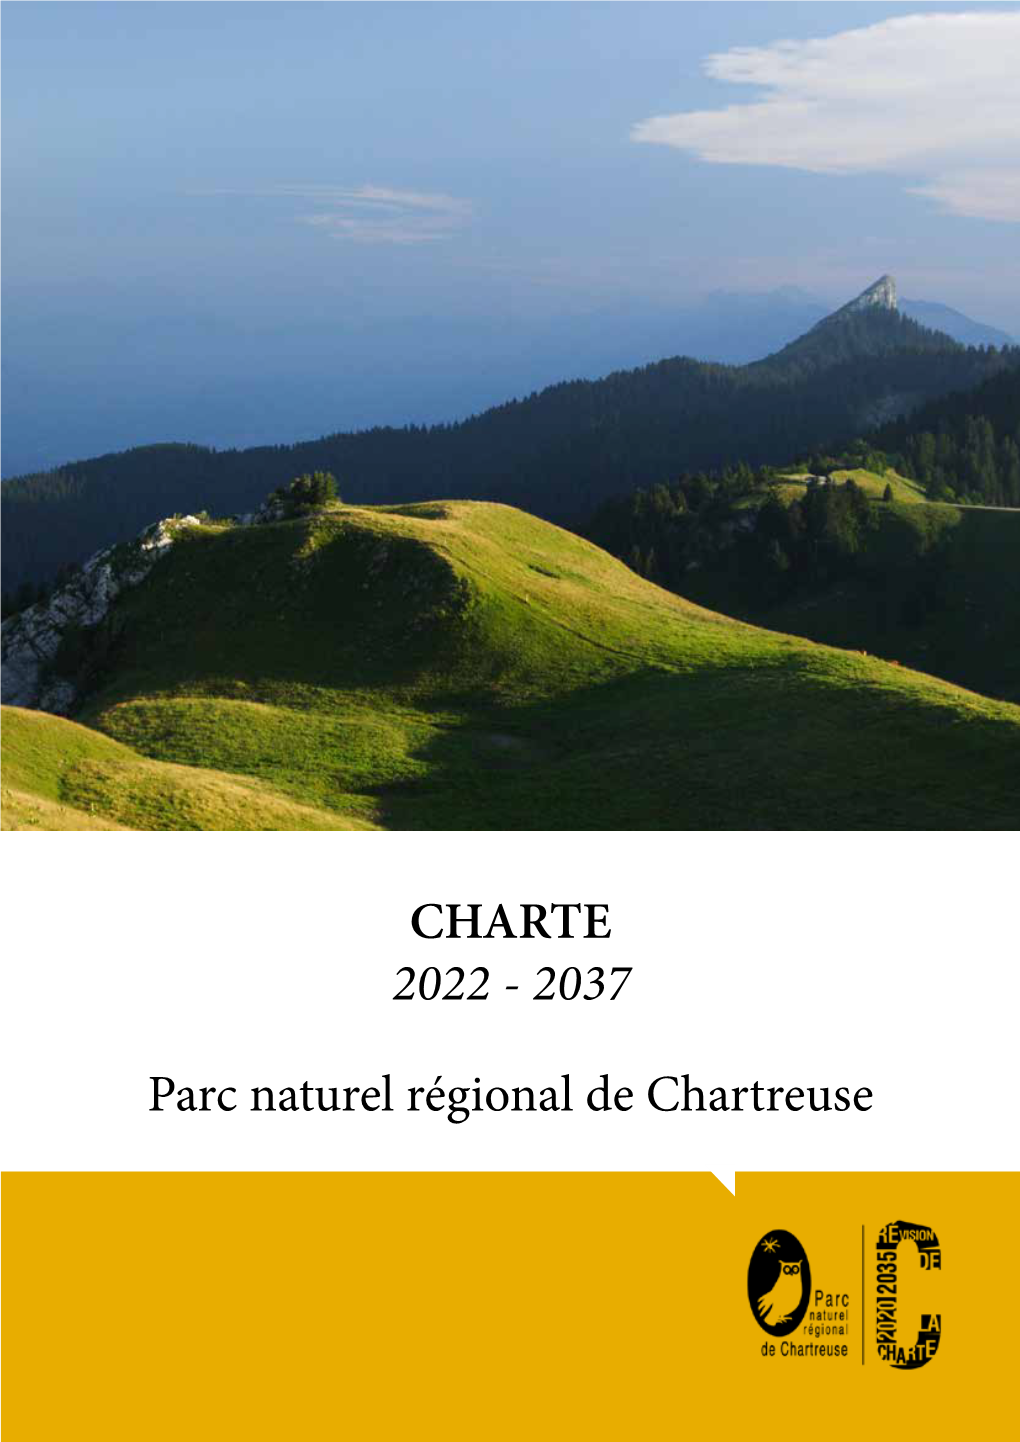 Charte 2022 - 2037